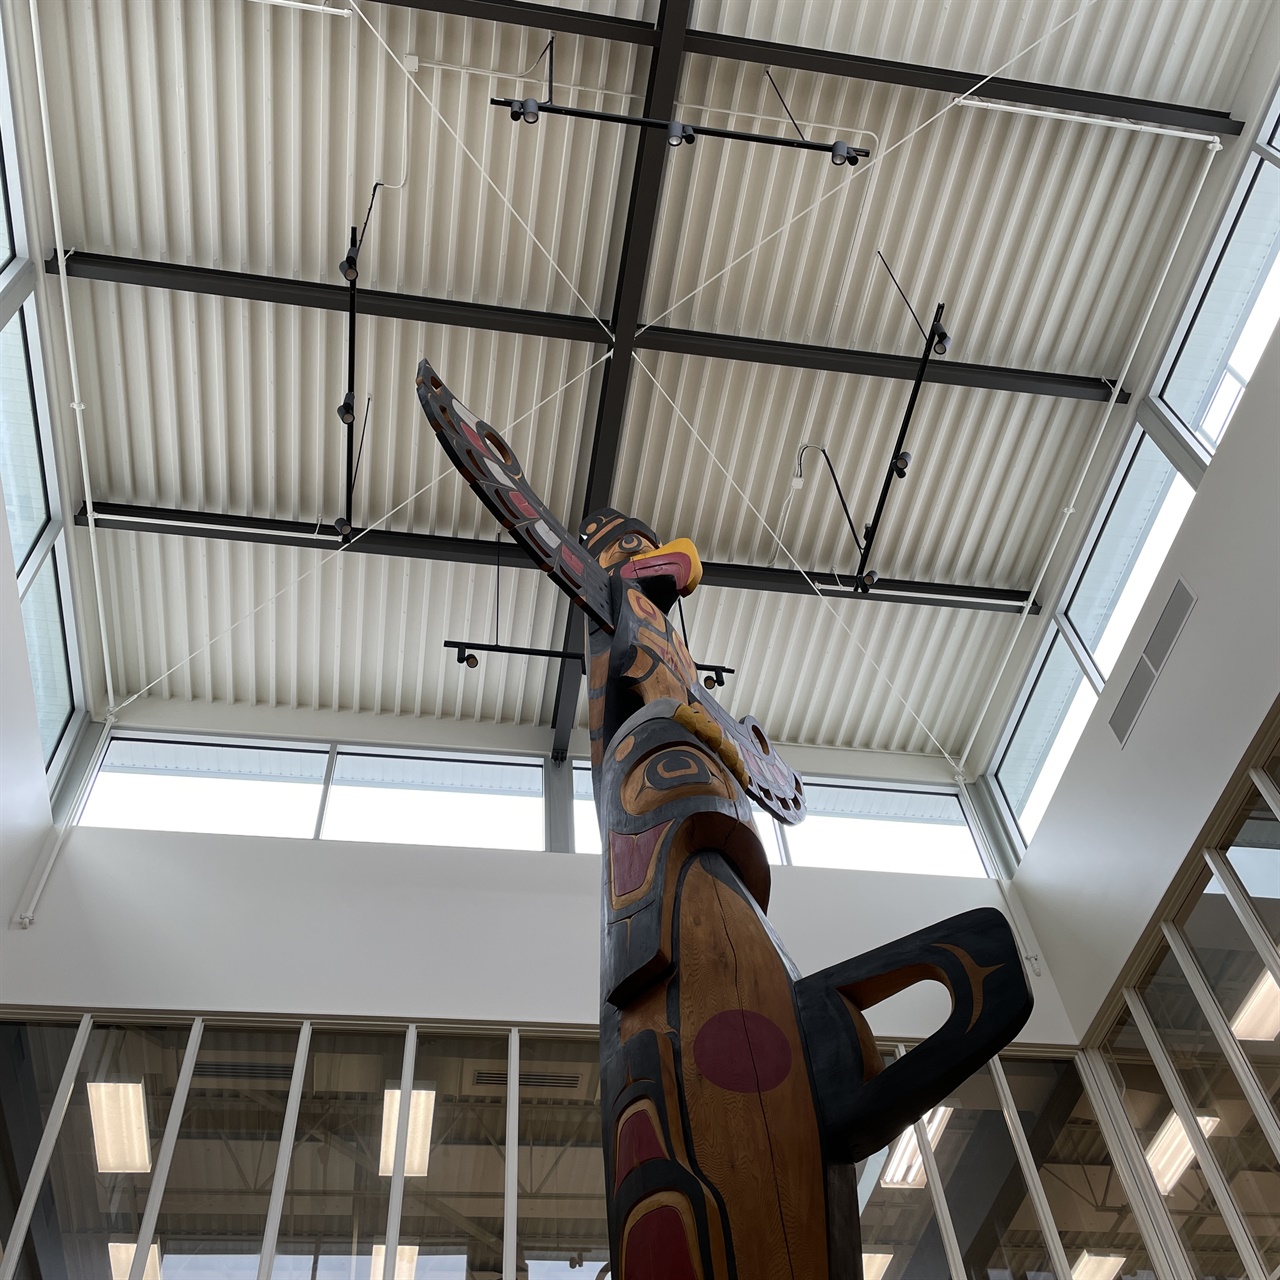 밴쿠버아일랜드대학교(VIU) 도서관에 세워진 조형물. 캐나다 원주민들의 역사와 문화를 상징한다.